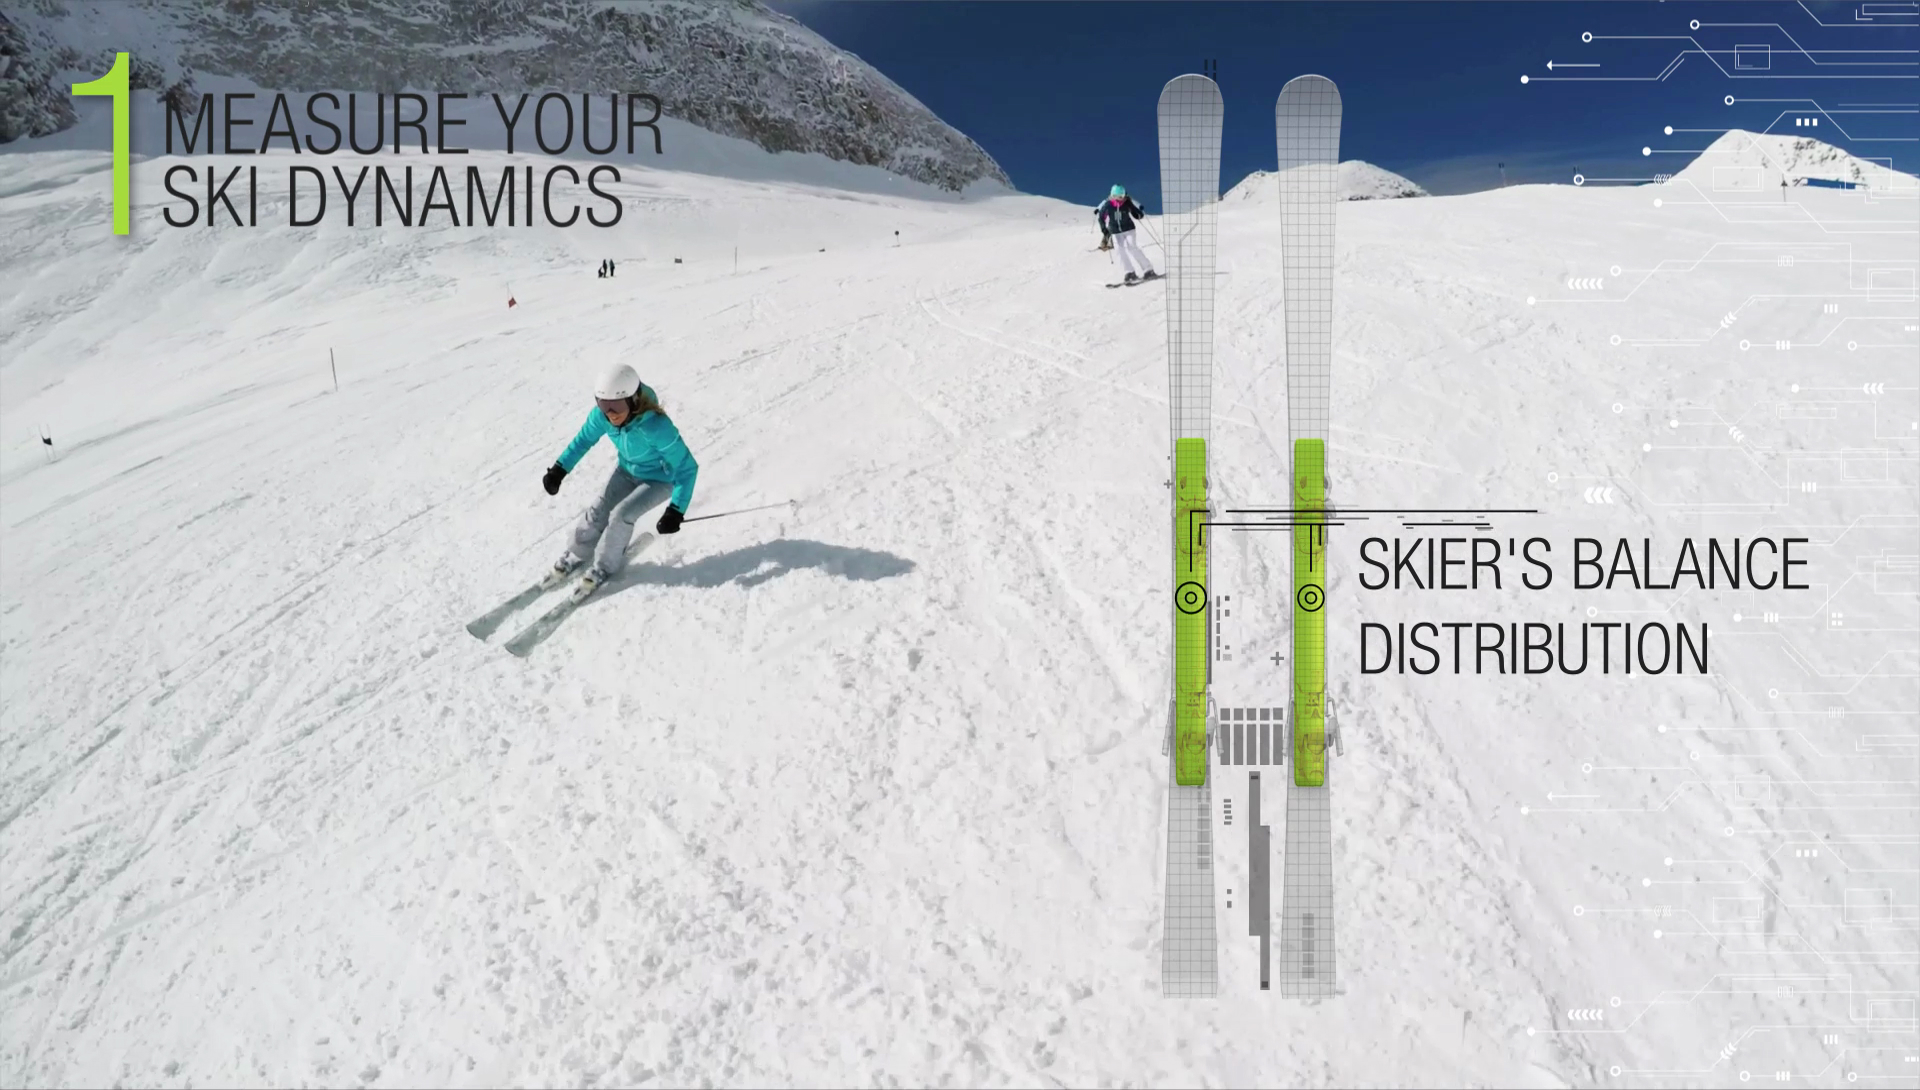 elan skis smart ski concept elan2